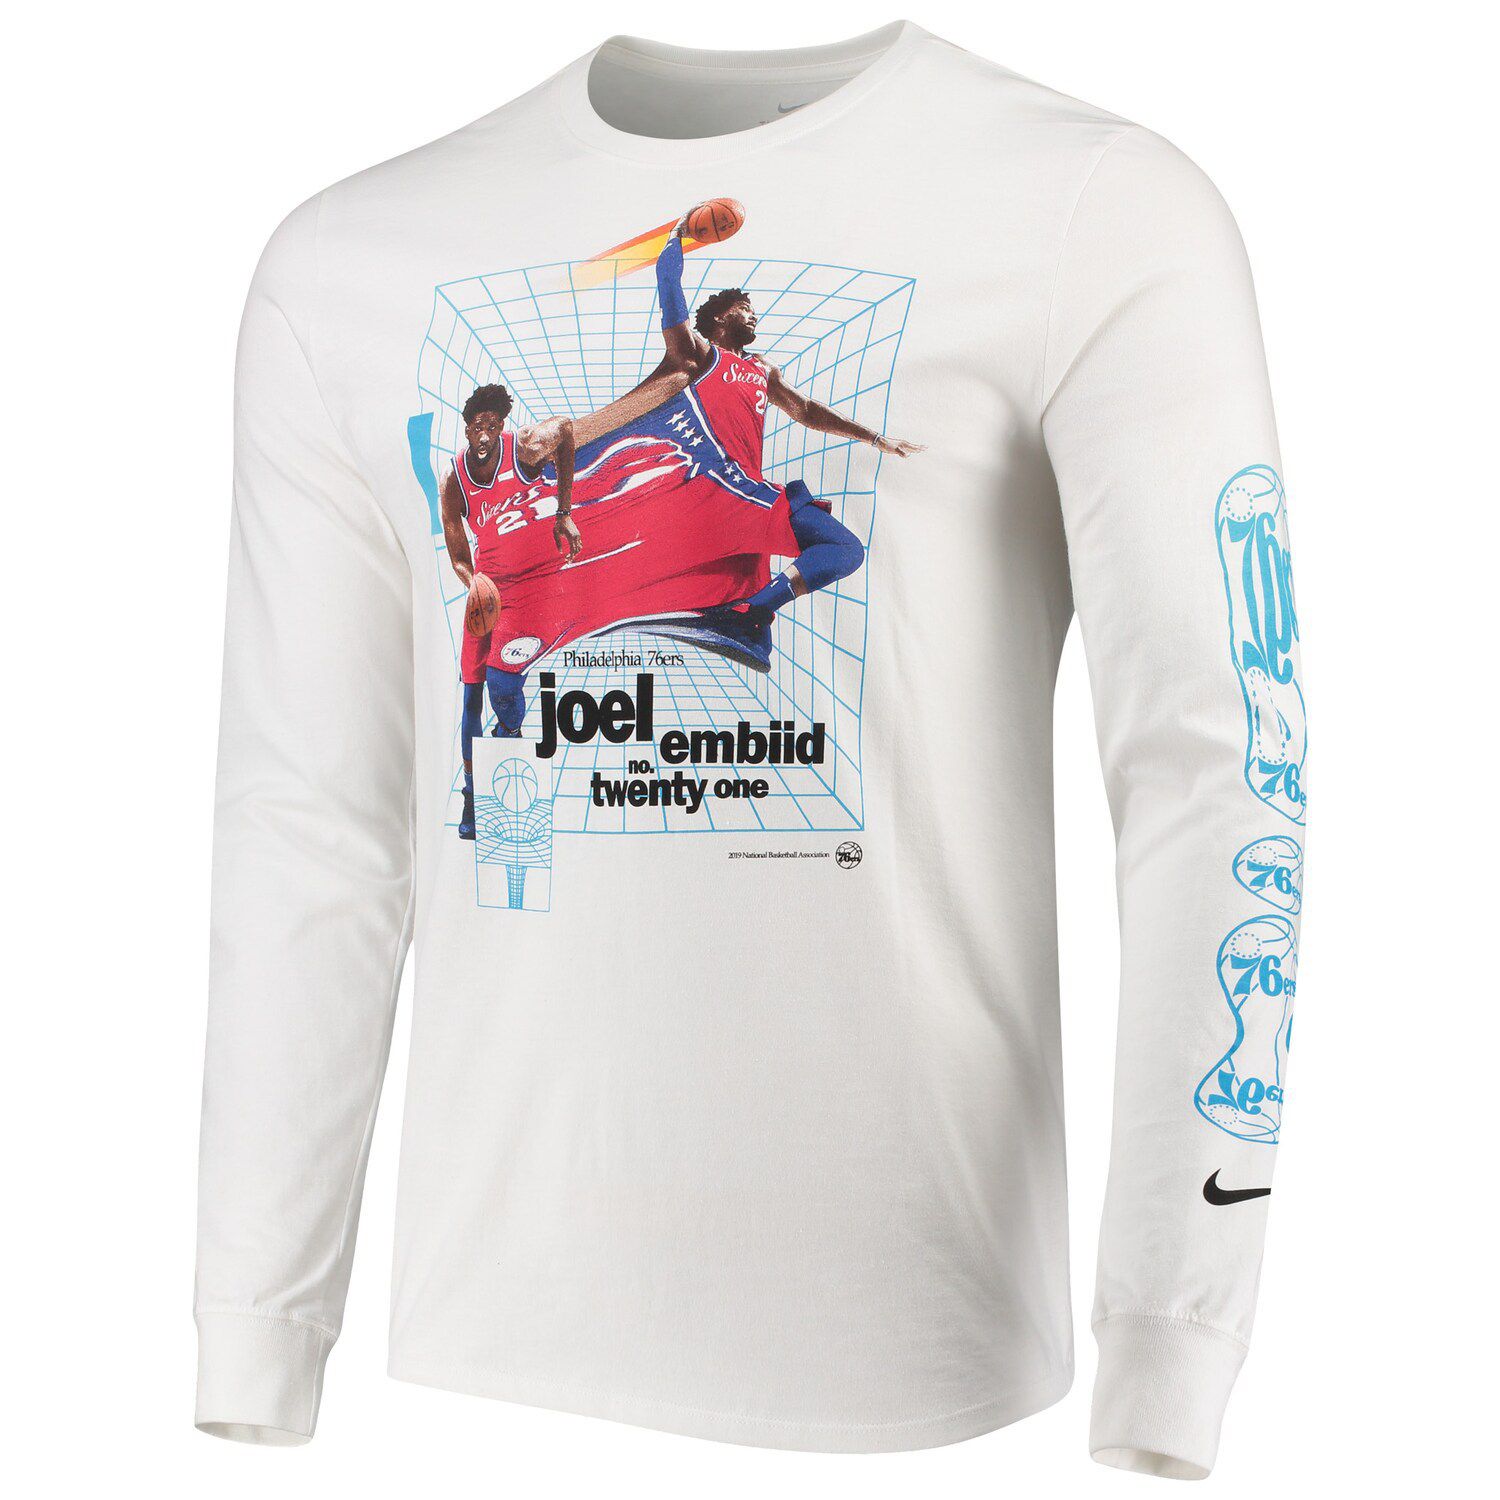 Men's Pro Standard Royal Philadelphia 76ers Chenille T-Shirt